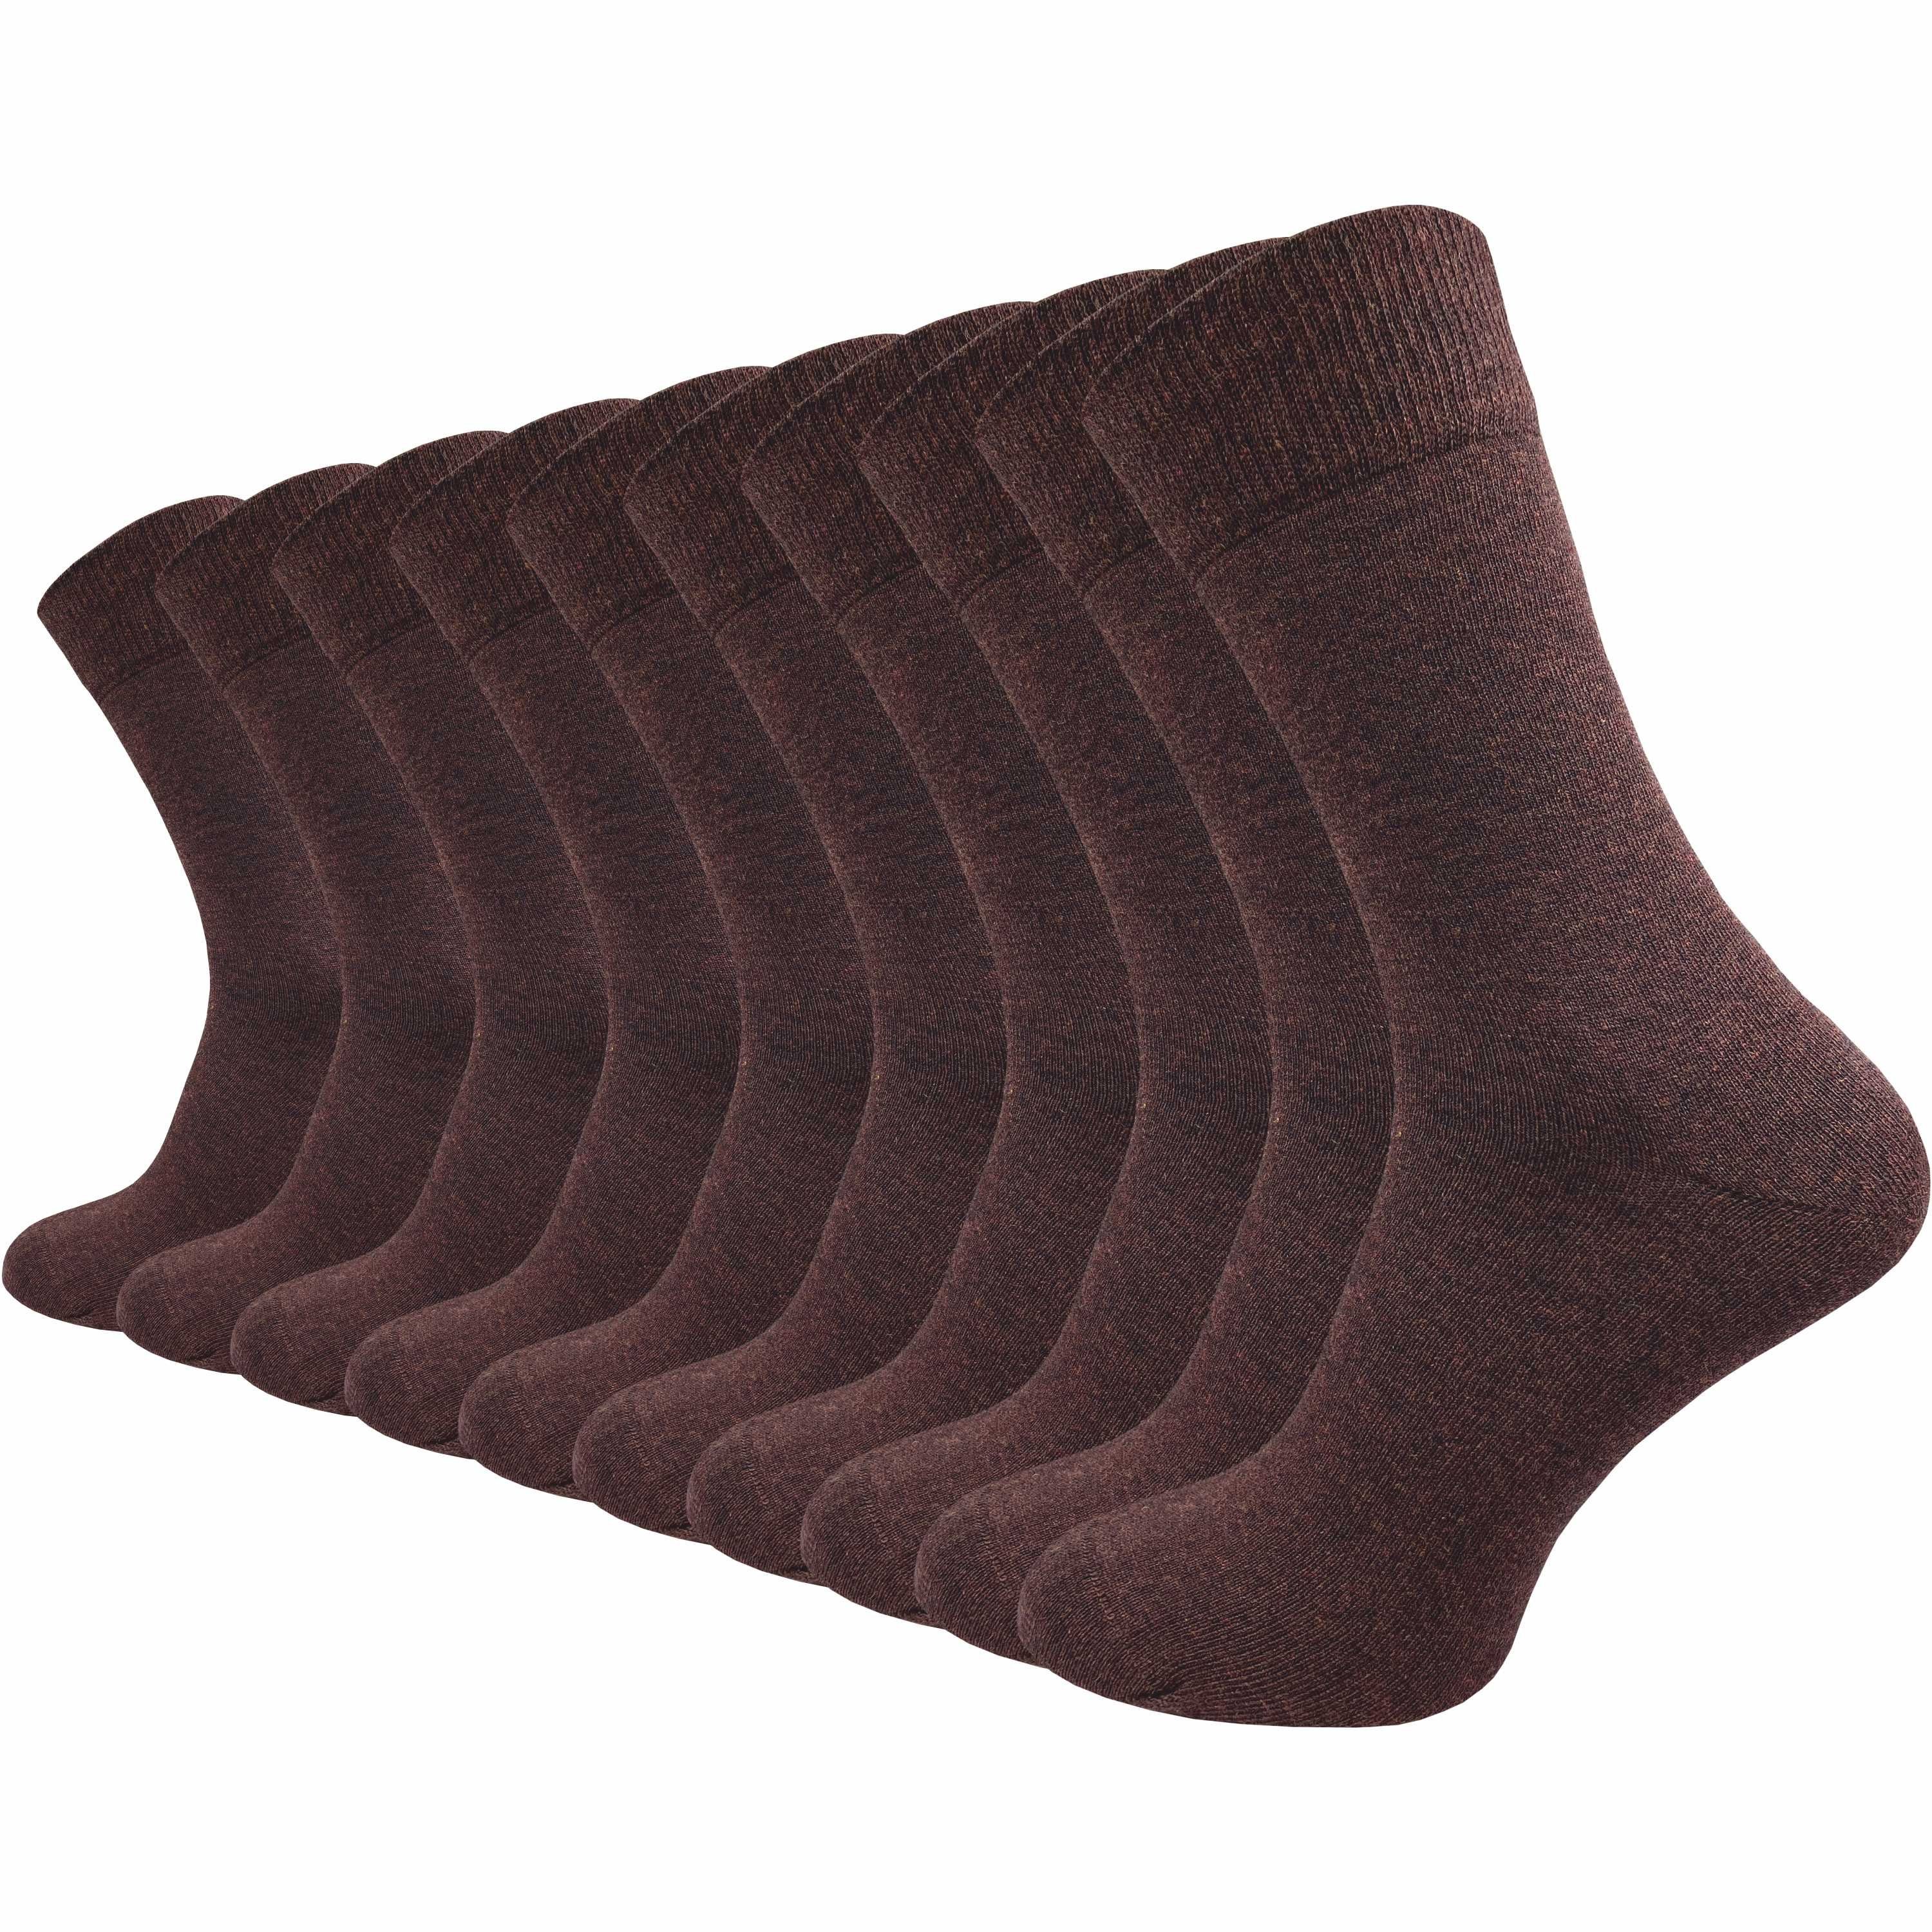 GAWILO Basicsocken für Damen & Herren aus hochwertiger Baumwolle ohne drückende Naht (10 Paar) Socken für den anspruchsvollen Alltag in schwarz, grau, blau und braun dunkelbraun